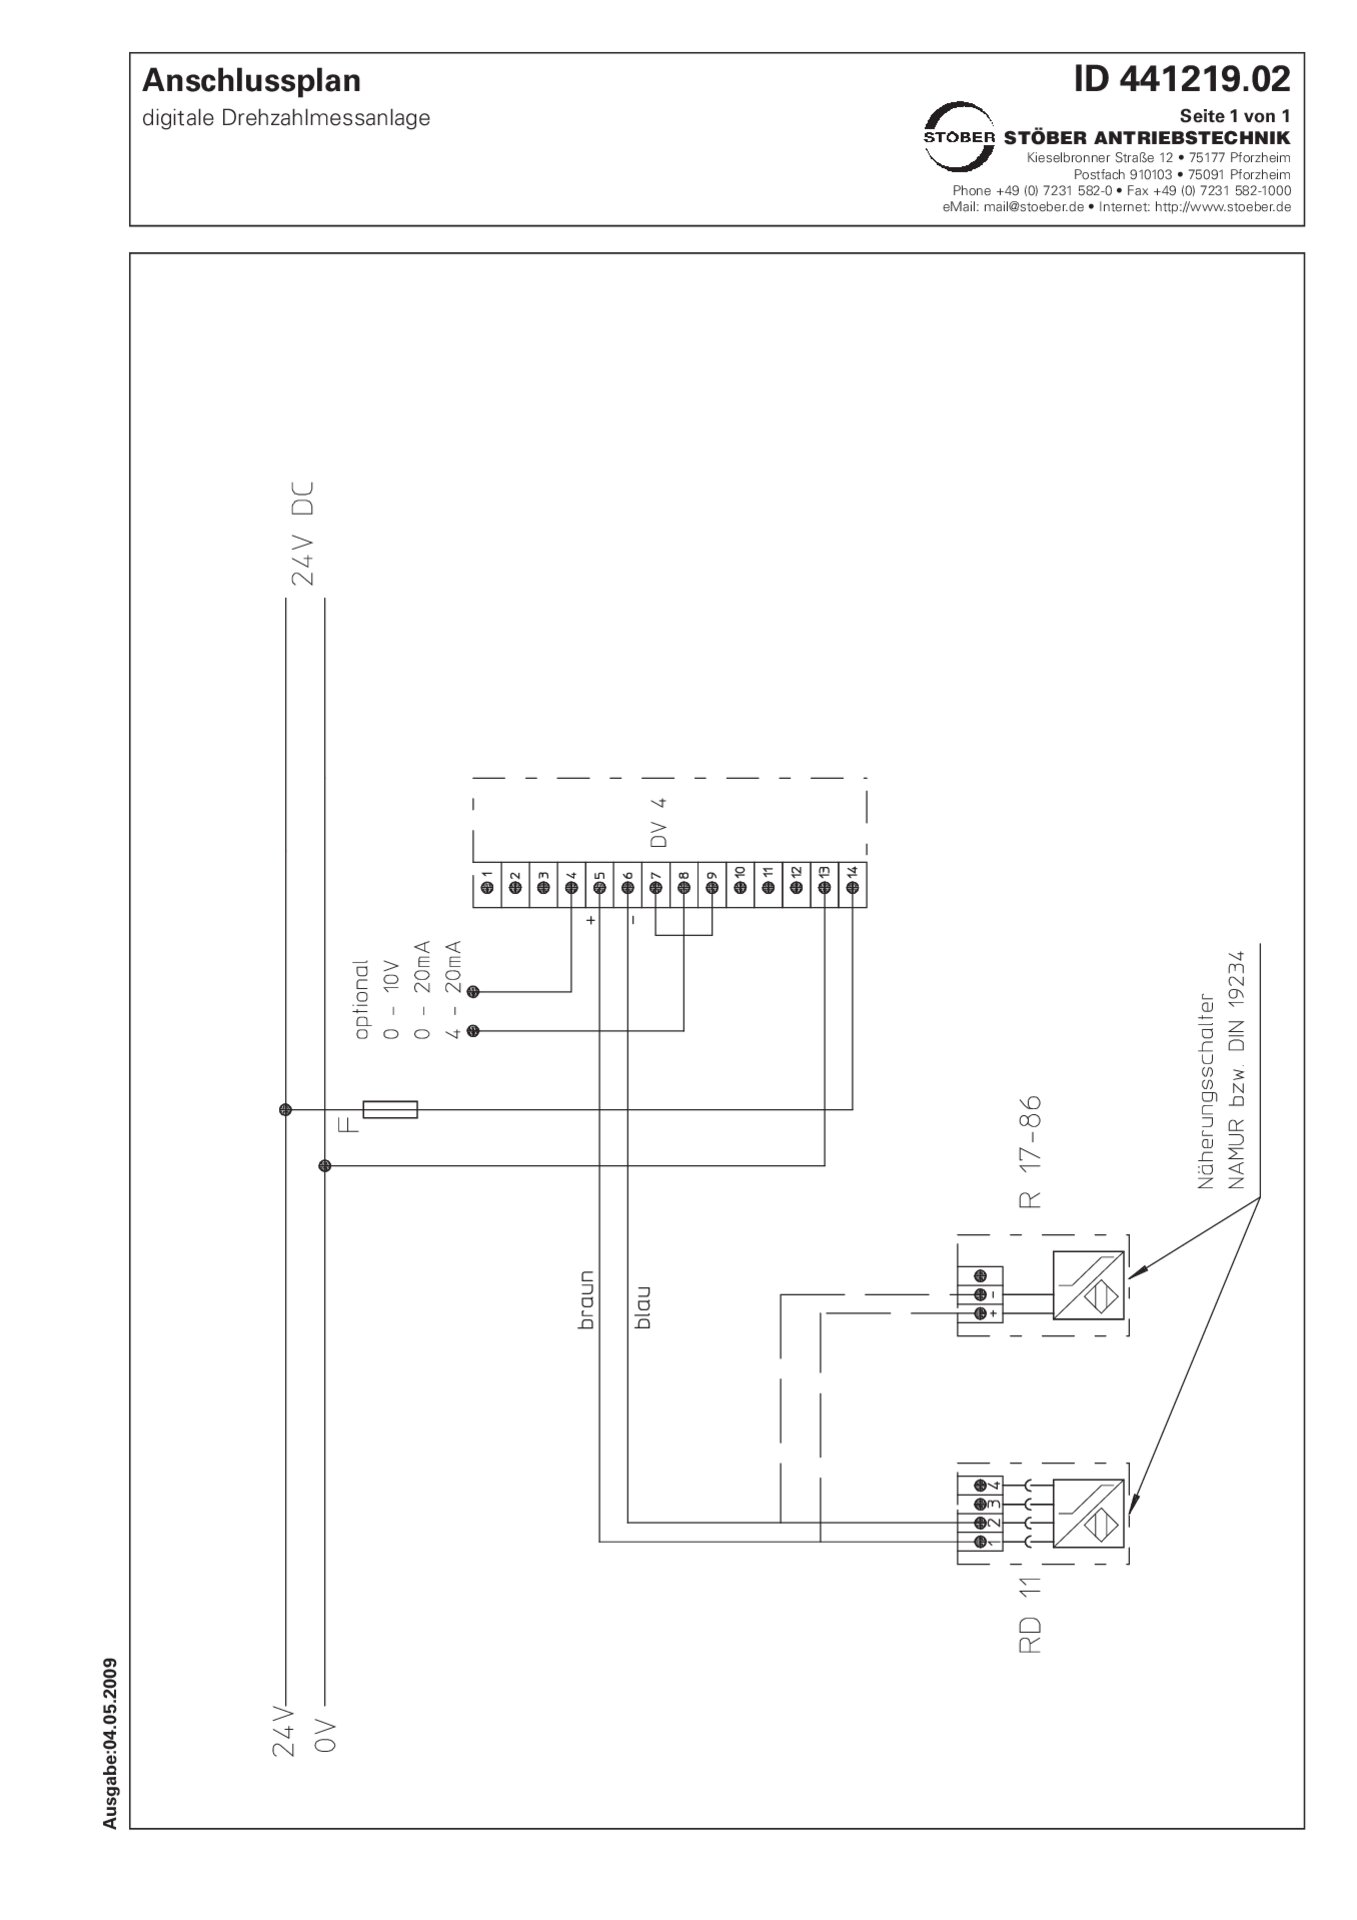 Anschlussplan R17-R86 Digitale Drehzahlmessanlage 24 V